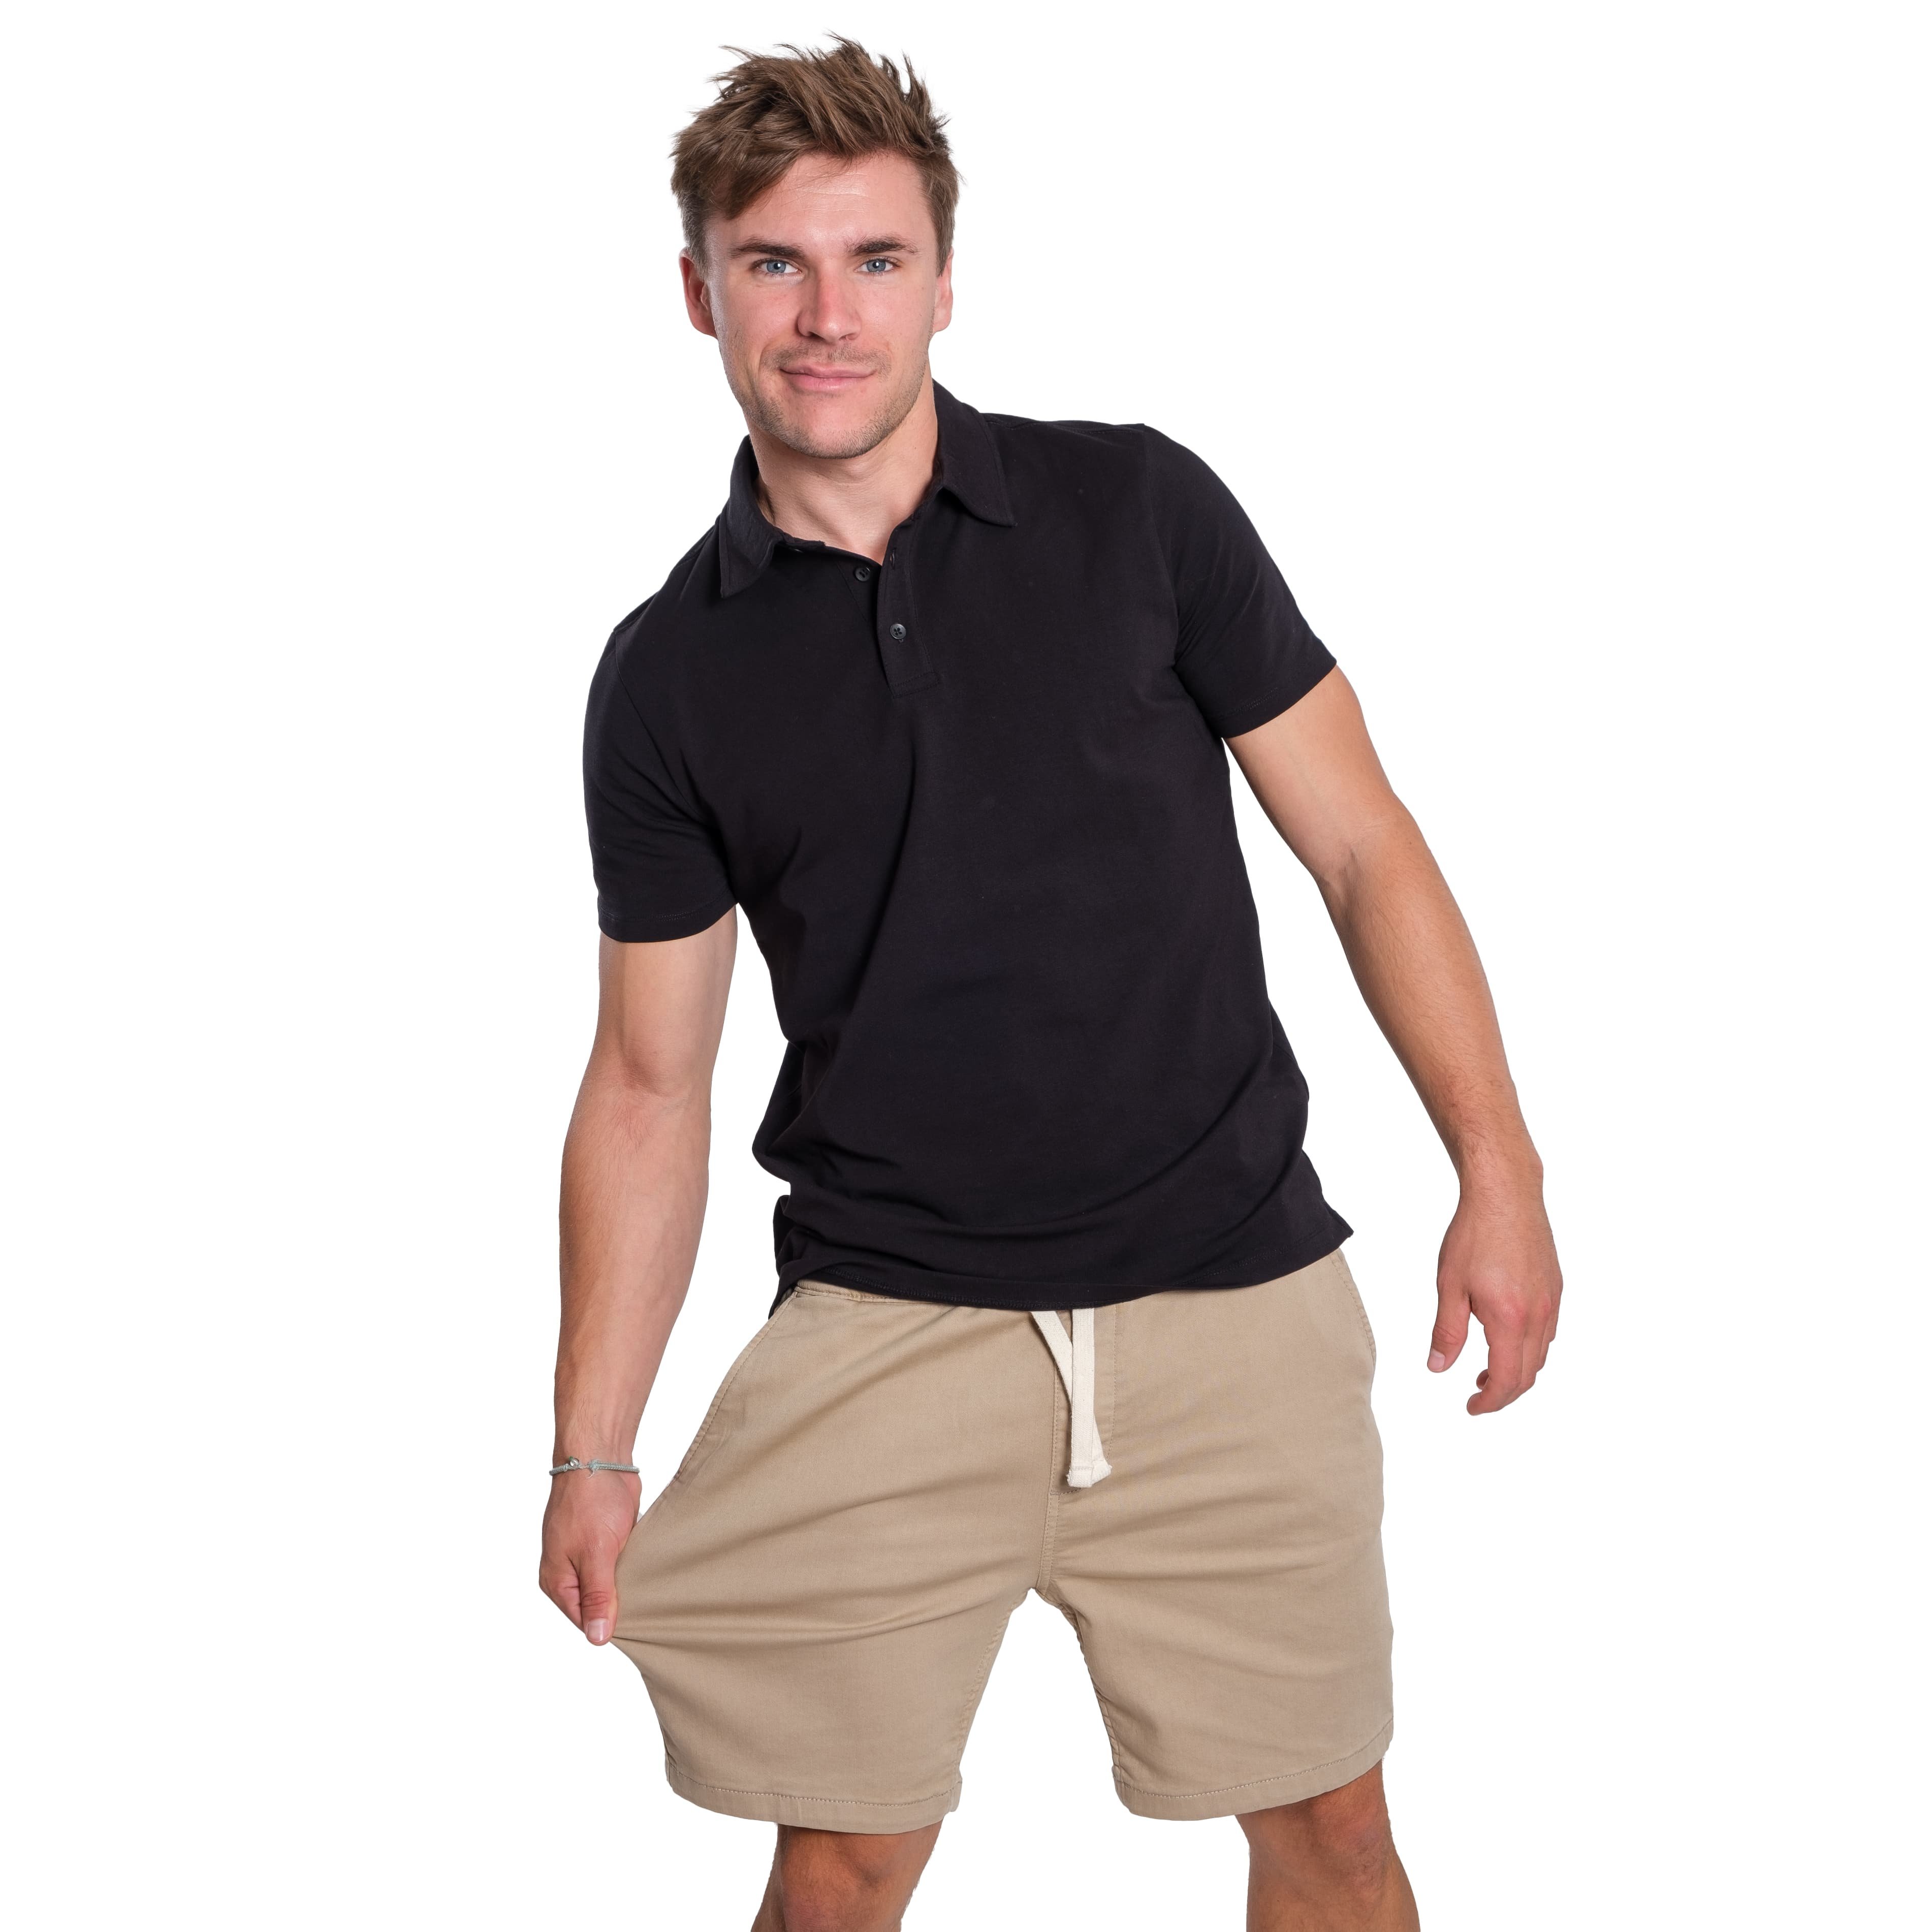 Comfort Shorts (Slim Fit) / Light Khaki